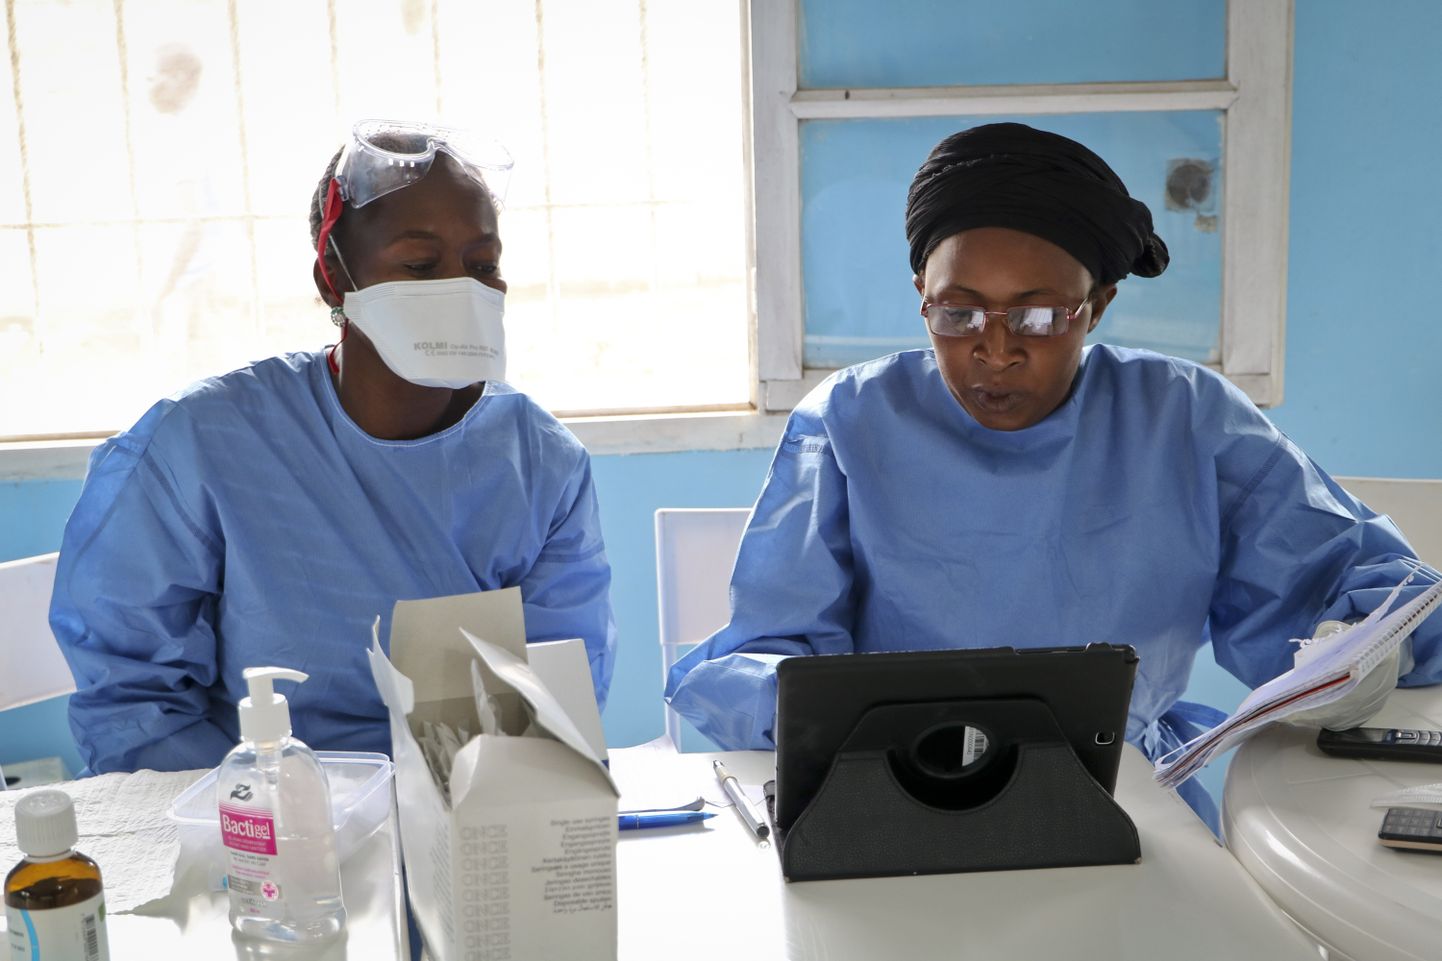 Kaks Maailma Terviseorganisatsiooni töötajad valmistuvad ebola vastu vaktsineerimiseks Kongo Demokraatlikus Vabariigis.